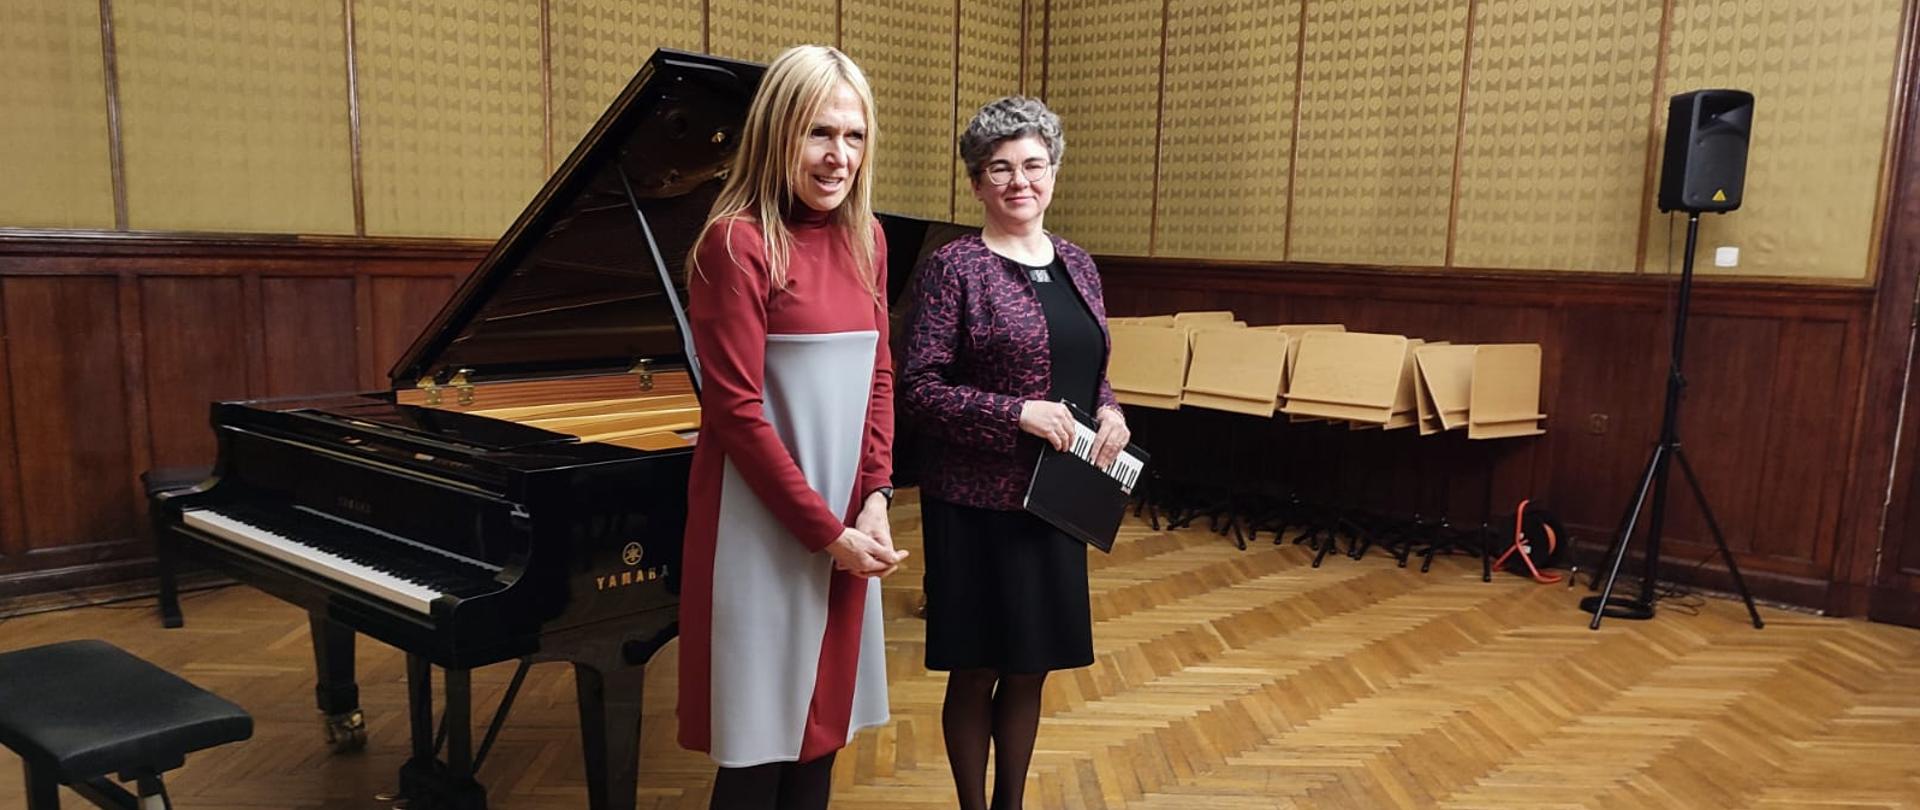 na zdjęciu dwie kobiety w kolorowych sukniach stojące przy czarnym fortepianie